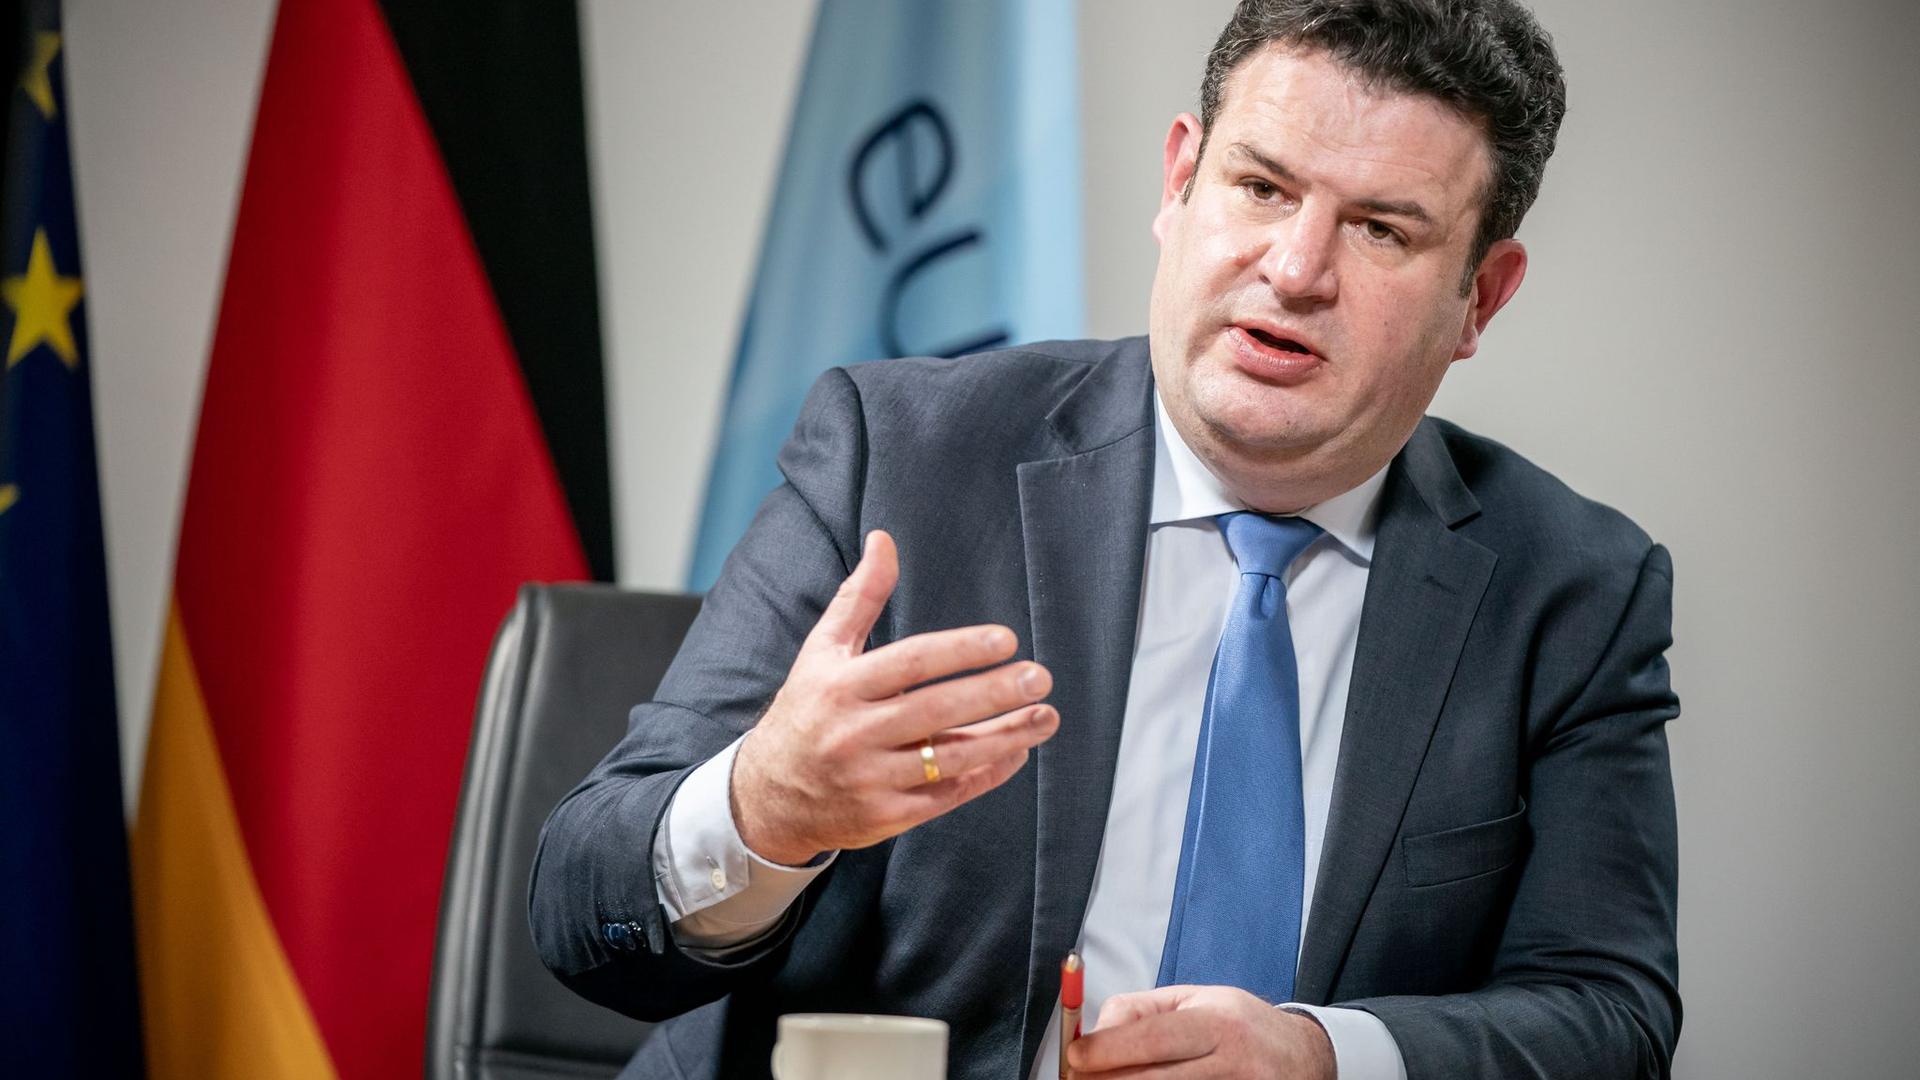 Hubertus Heil (SPD), Bundesminister für Arbeit und Soziales, aufgenommen im Arbeitsministerium bei einem Interview mit der dpa Deutsche Presse-Agentur.